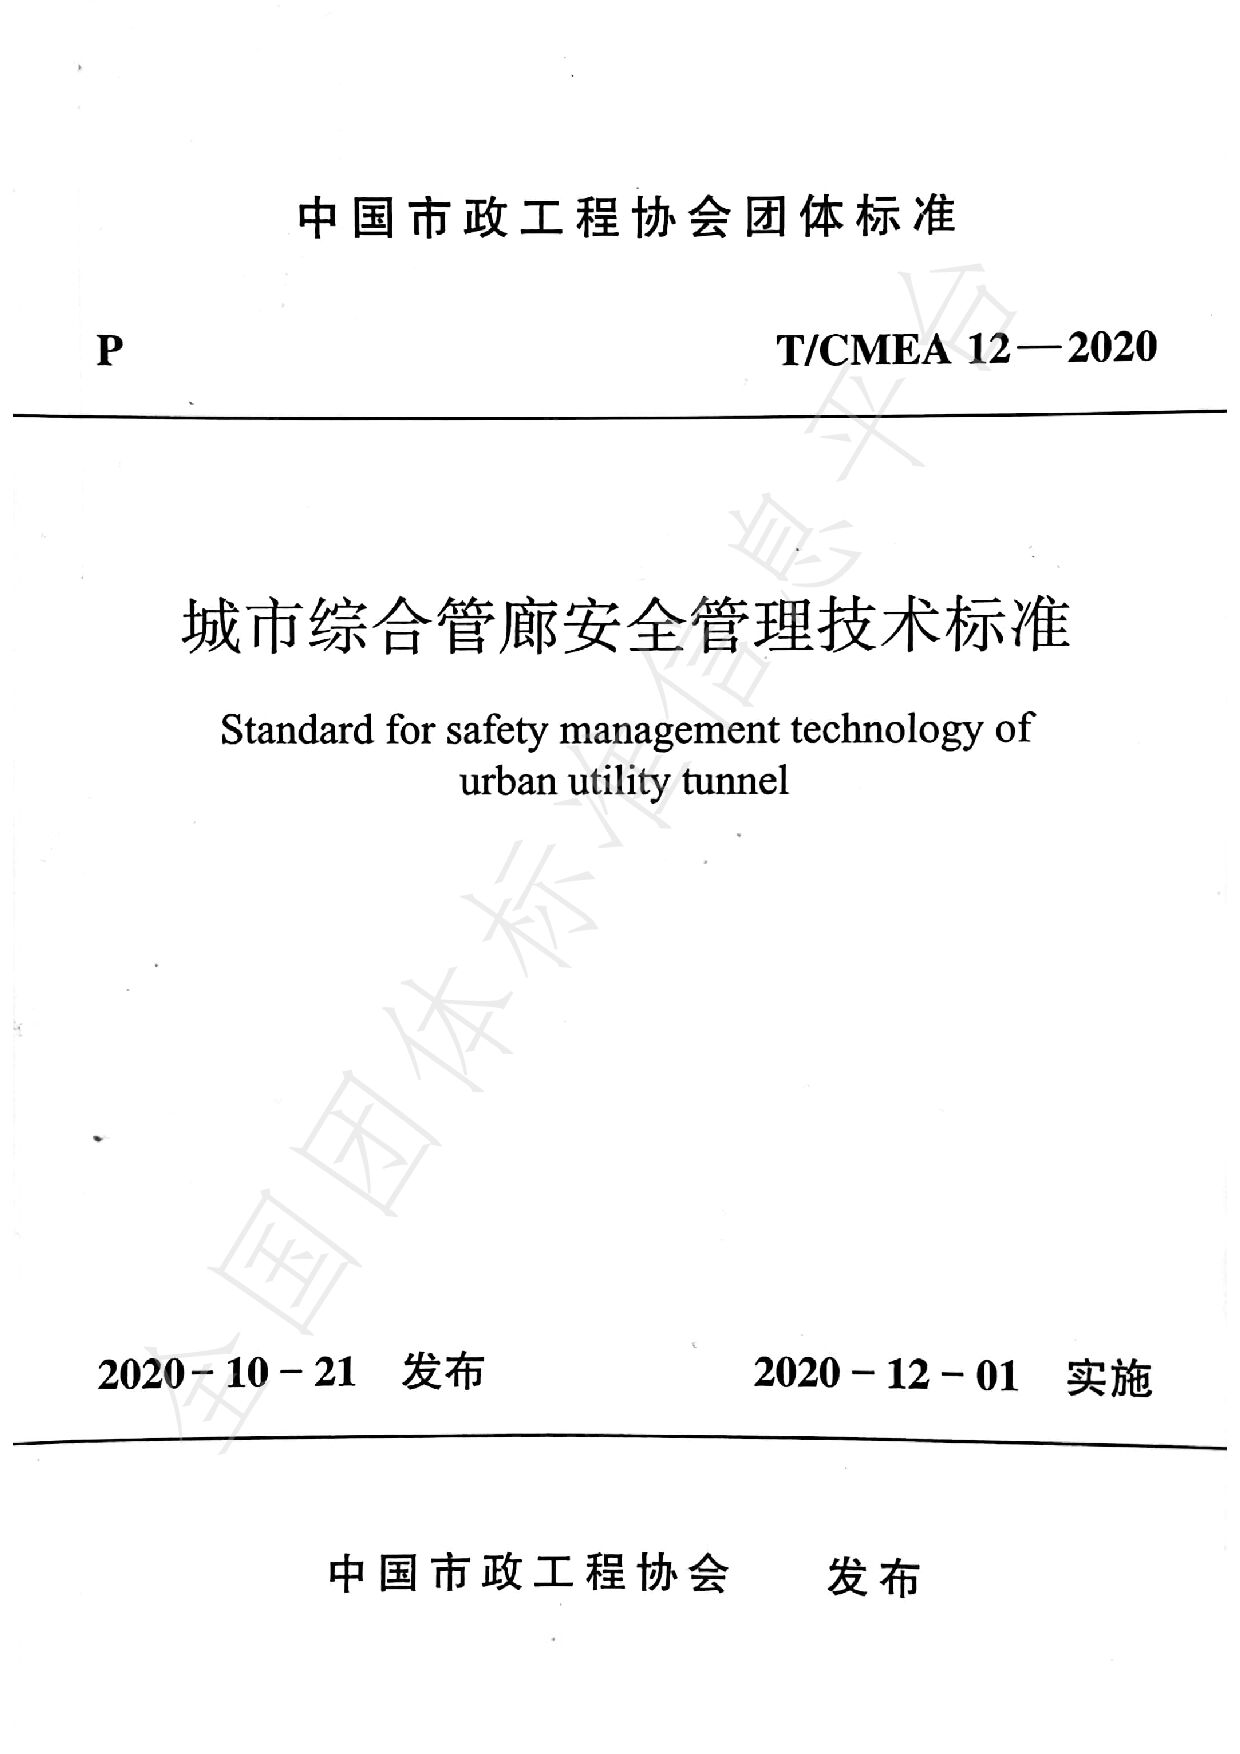 T/CMEA 12-2020封面图